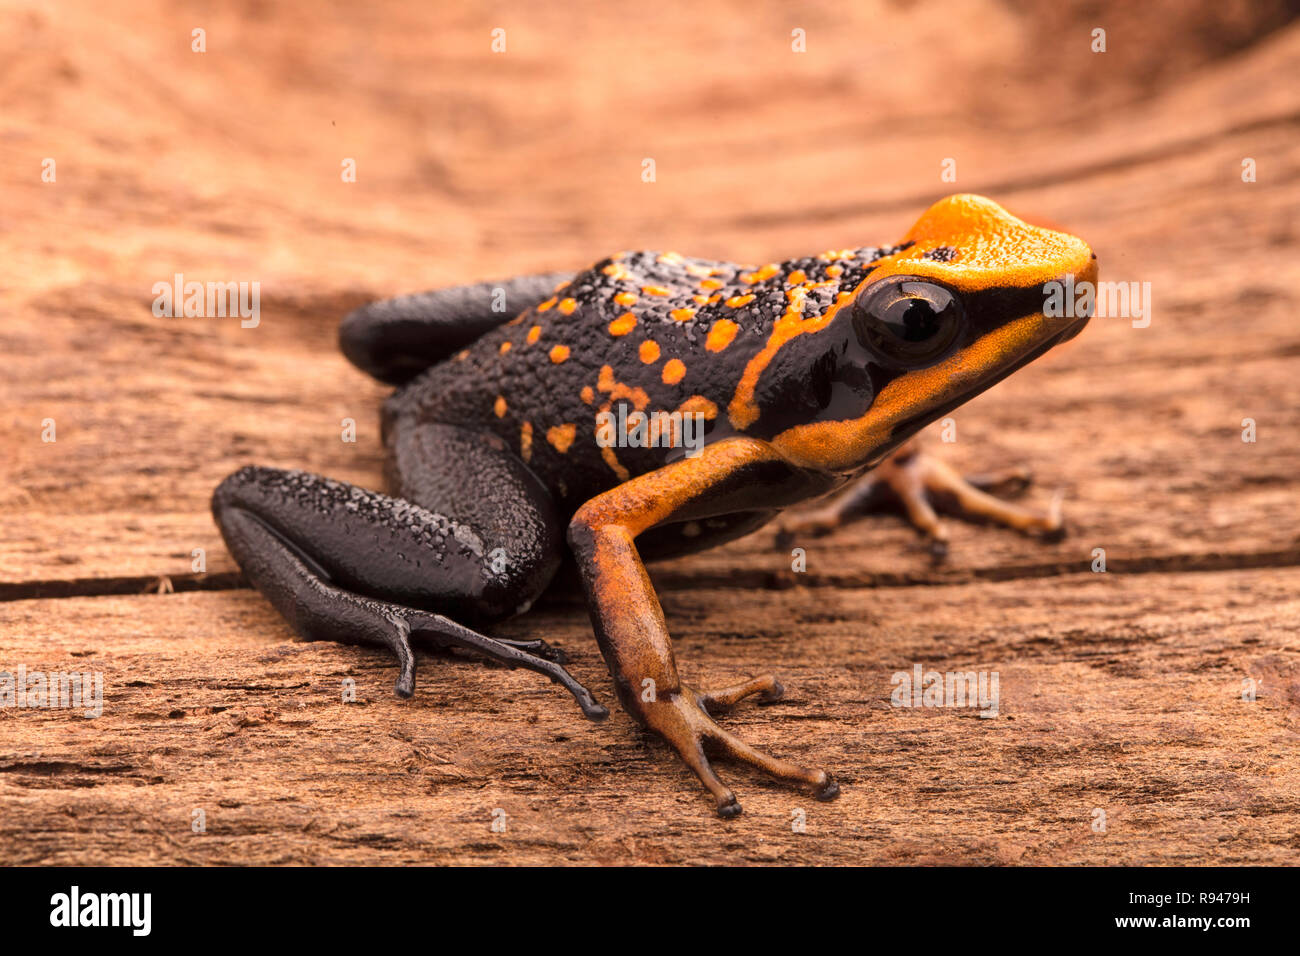 poison dart frog, Ameerega silverstonei. Orange poisonous animal from the Amazon rain forest of Peru. Stock Photo